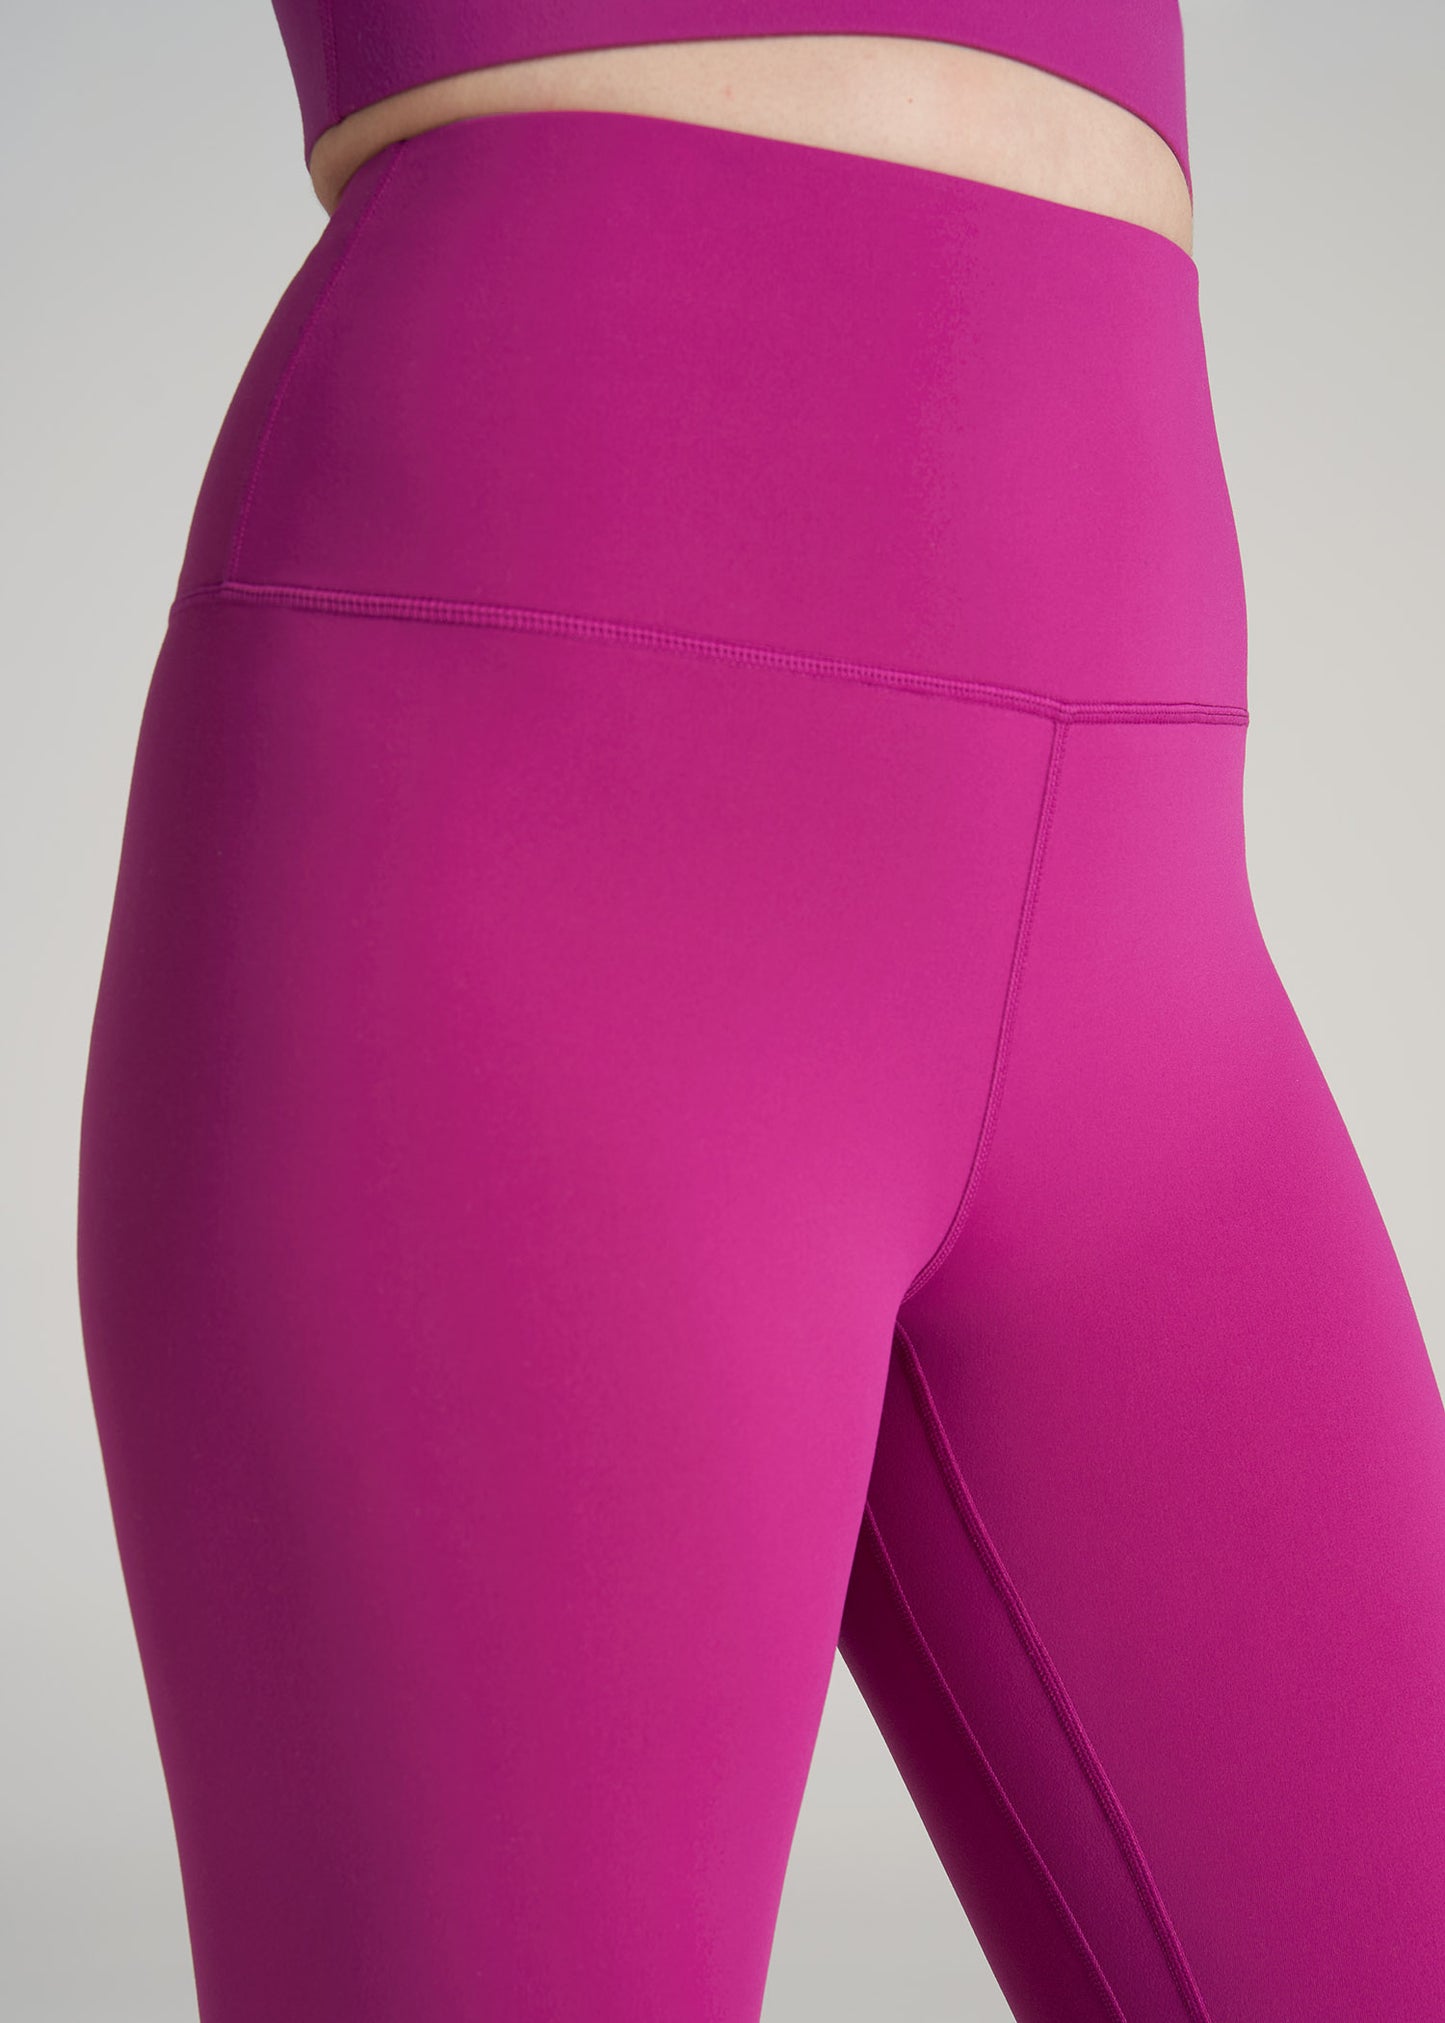 ONeill Womens Active Pink Green Print 7/8 Leggings: M - Tallington